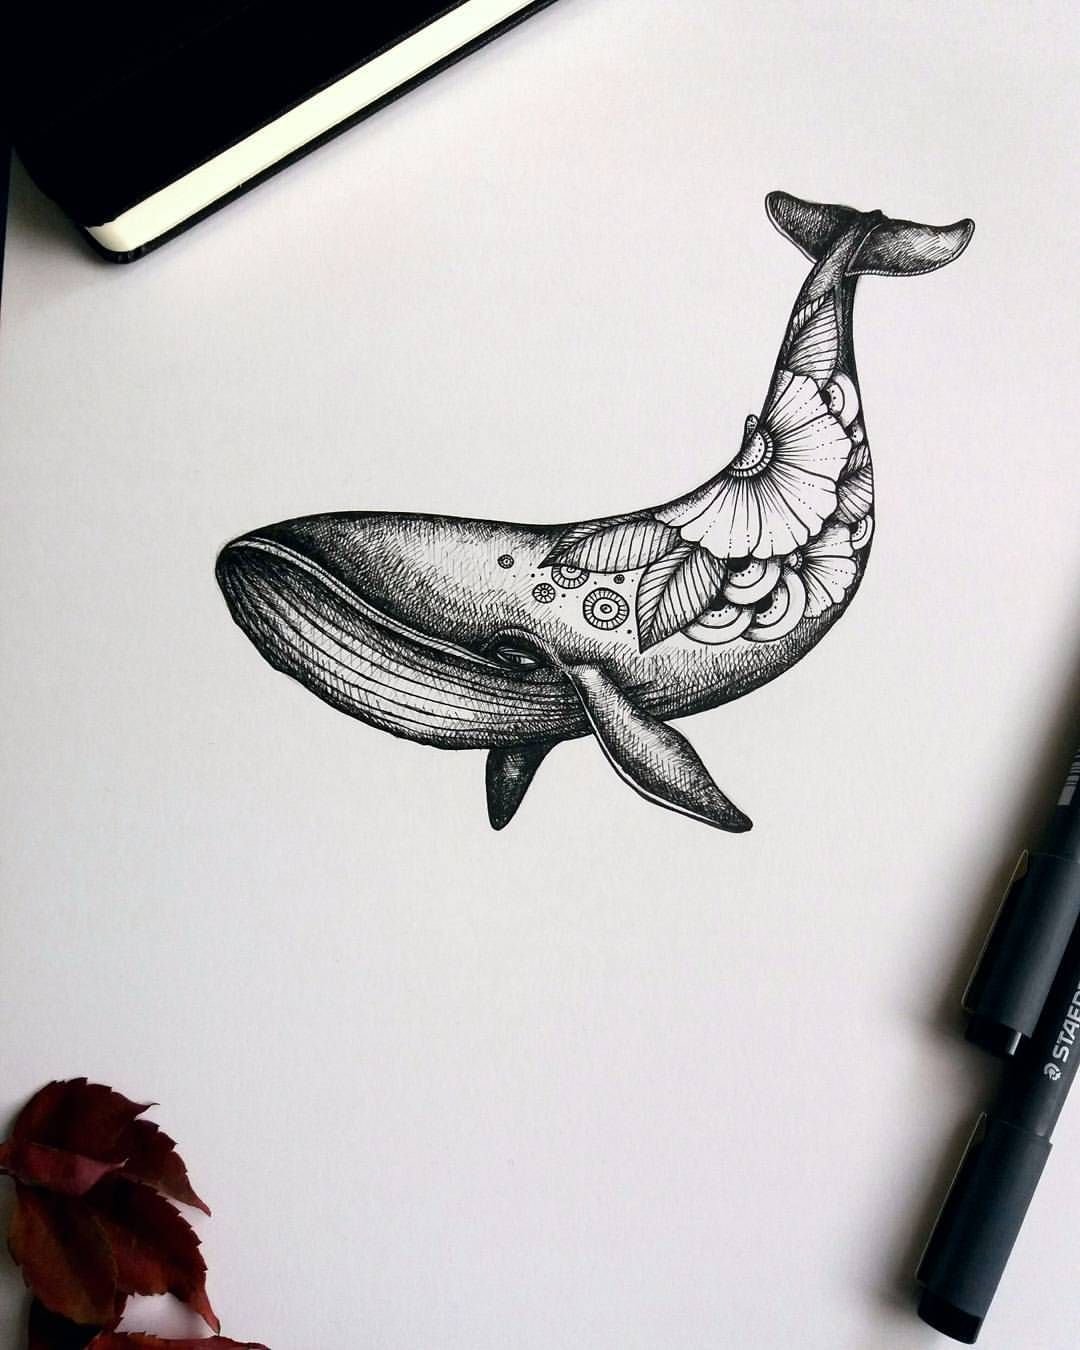 Эскизы китов